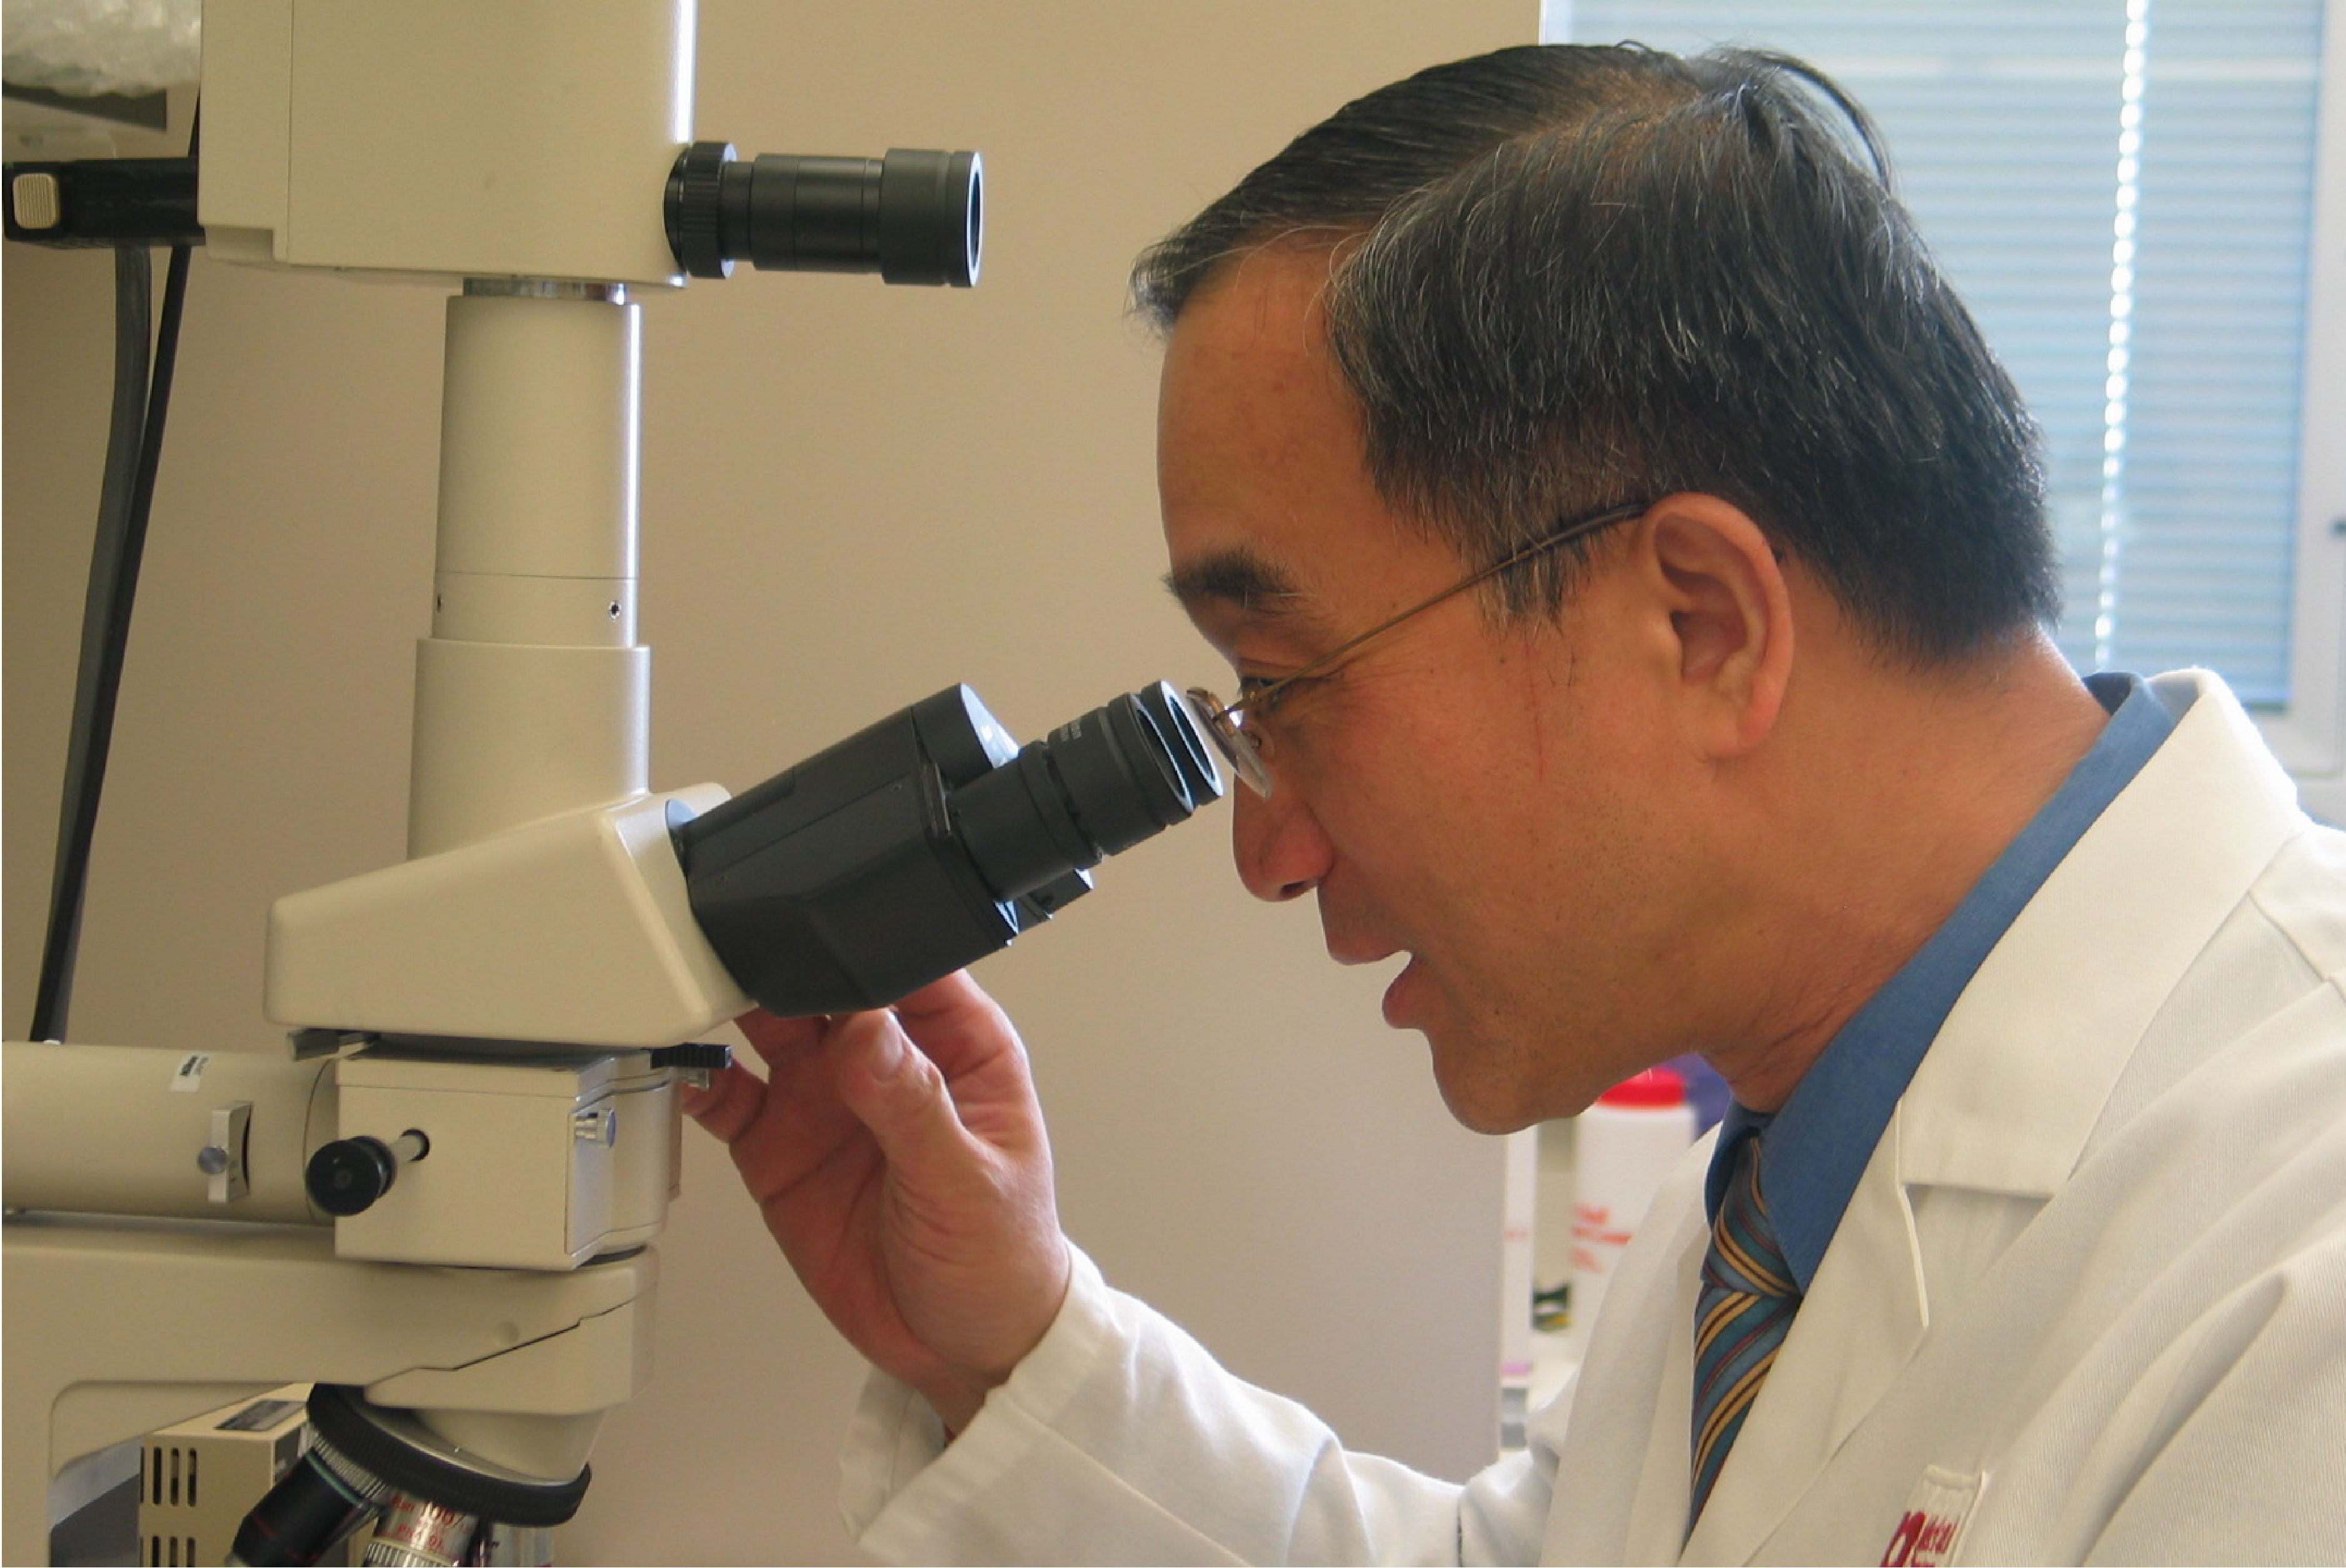 Dr. Lin looks through a microscope